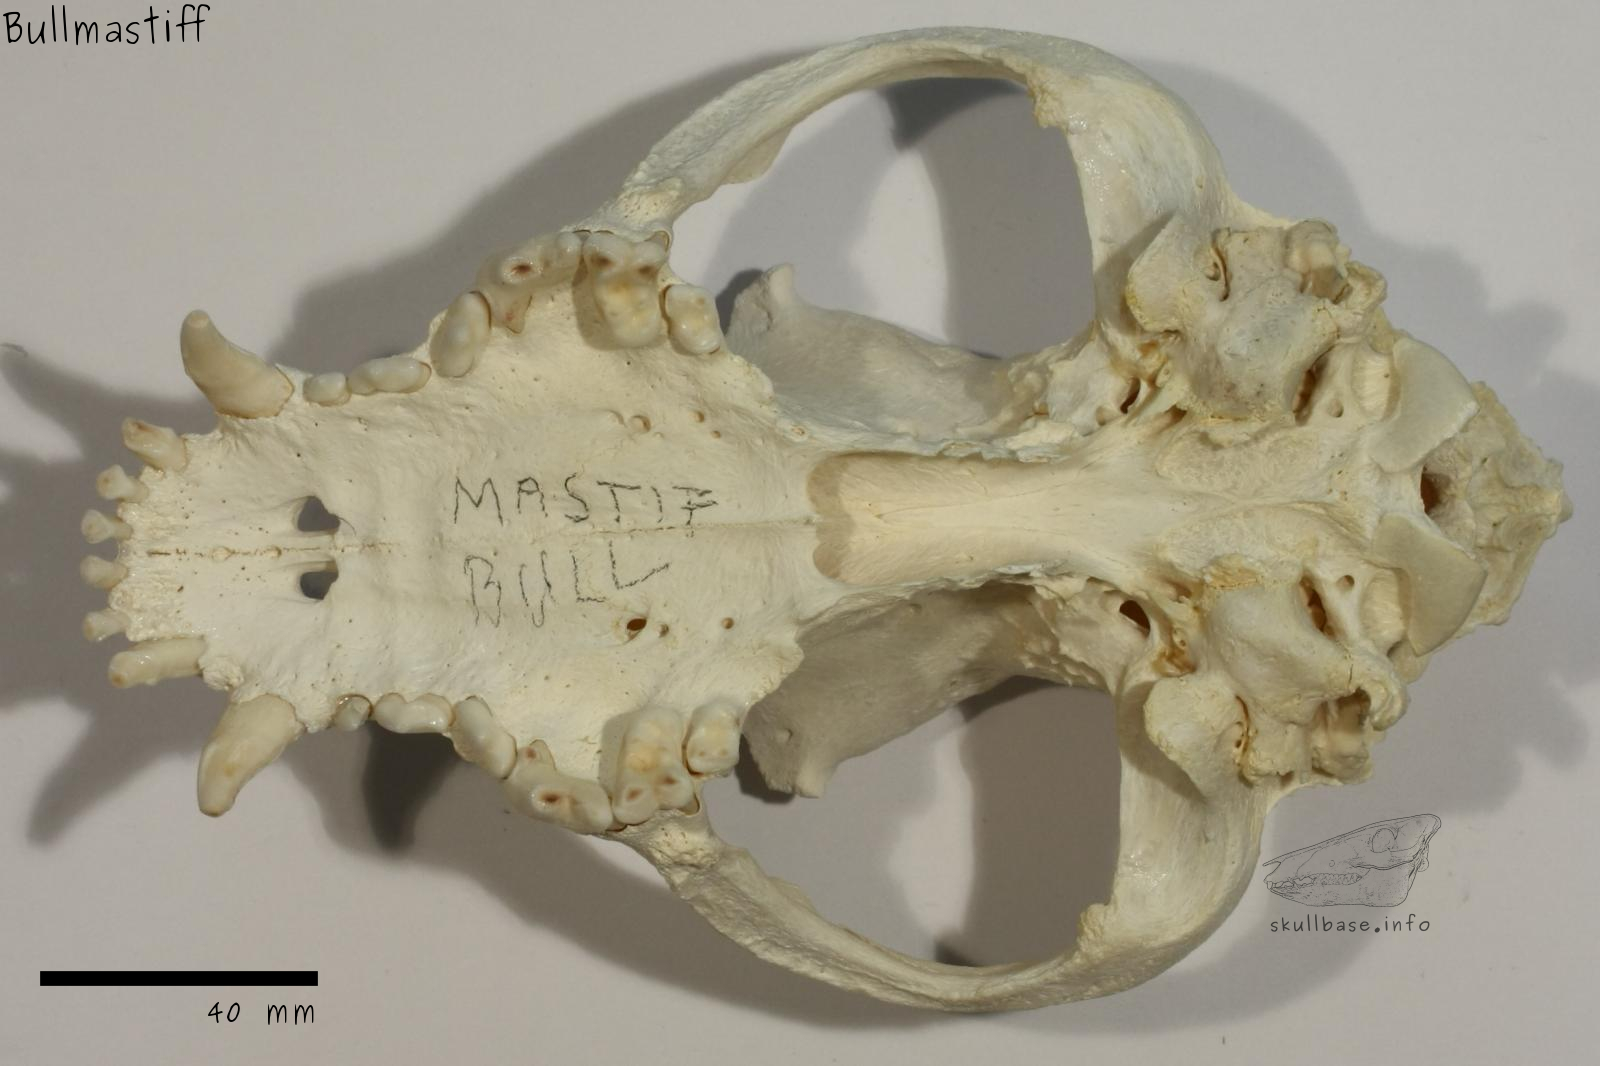 Bullmastiff (Canis lupus familiaris) skull ventral view